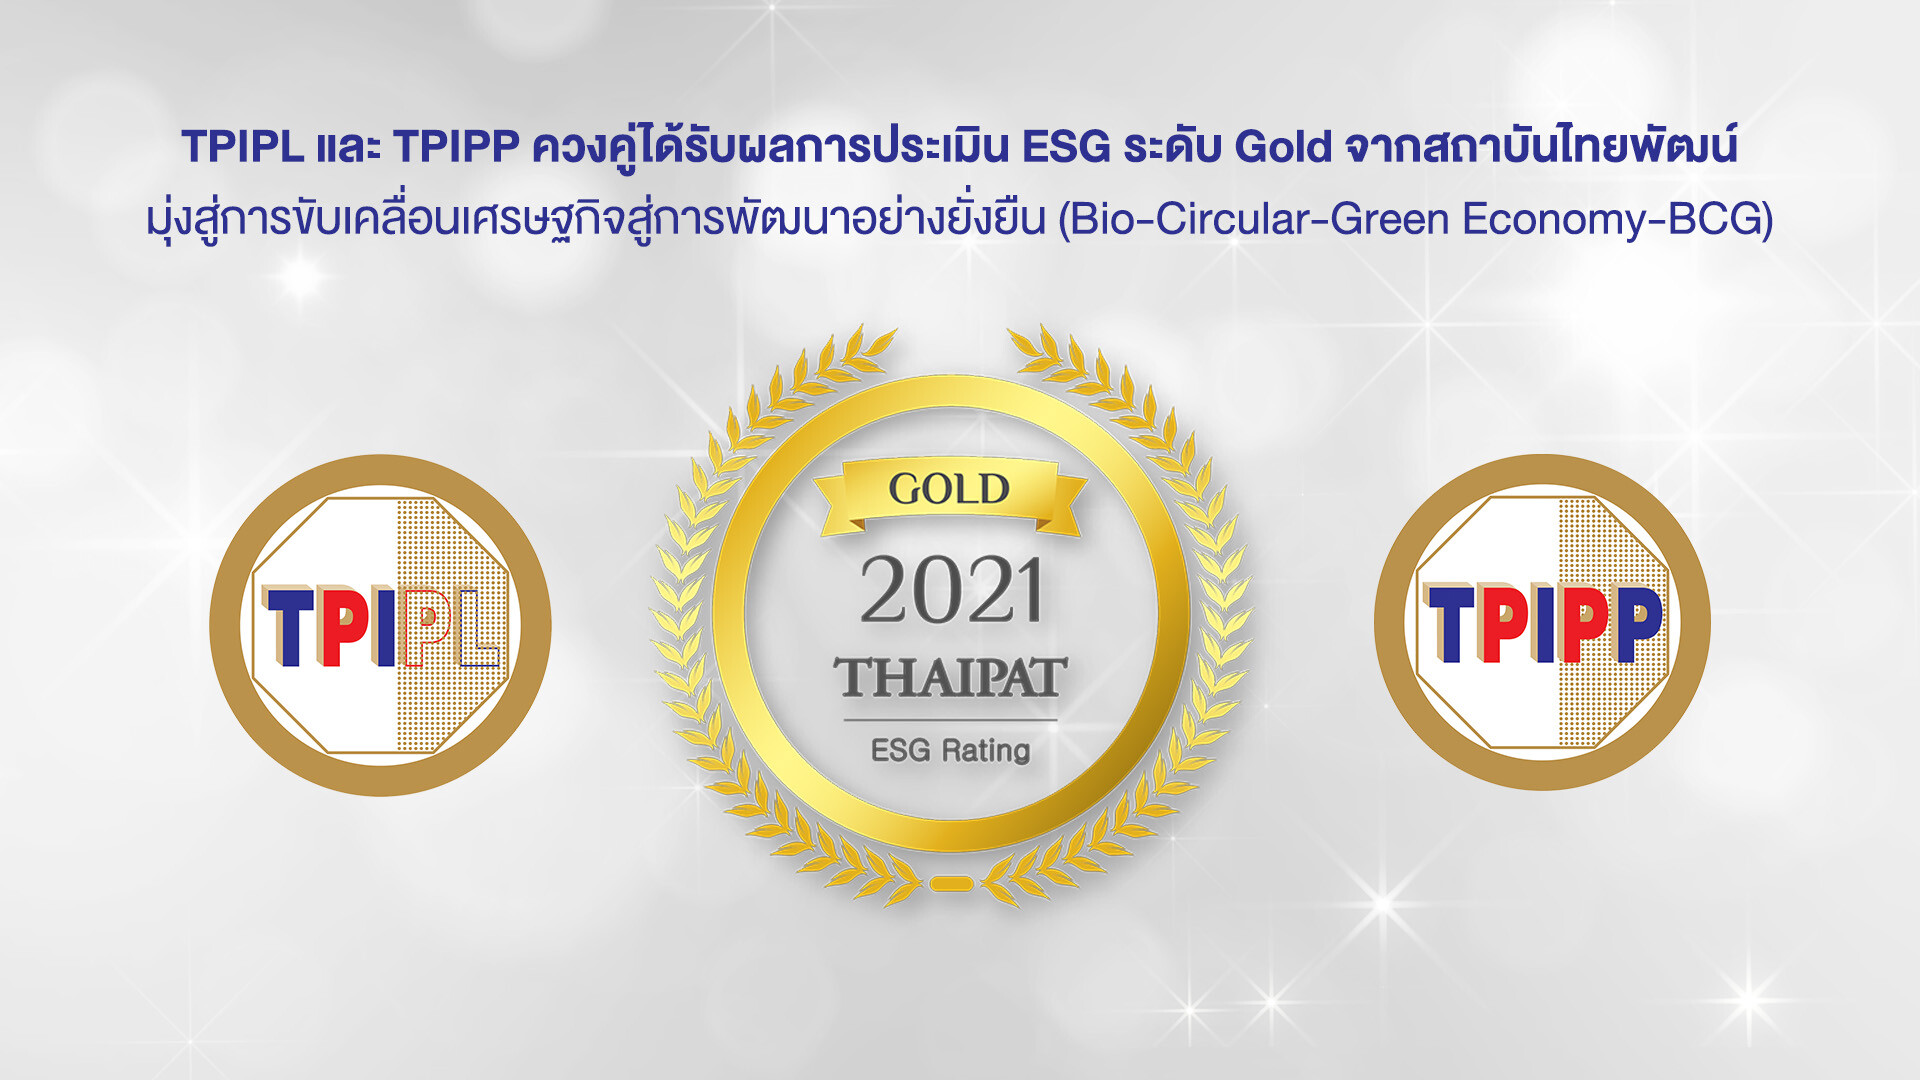 TPIPL และ TPIPP ควงคู่ได้รับผลการประเมิน ESG ระดับ Gold จากสถาบันไทยพัฒน์ มุ่งสู่การขับเคลื่อนเศรษฐกิจสู่การพัฒนาอย่างยั่งยืน